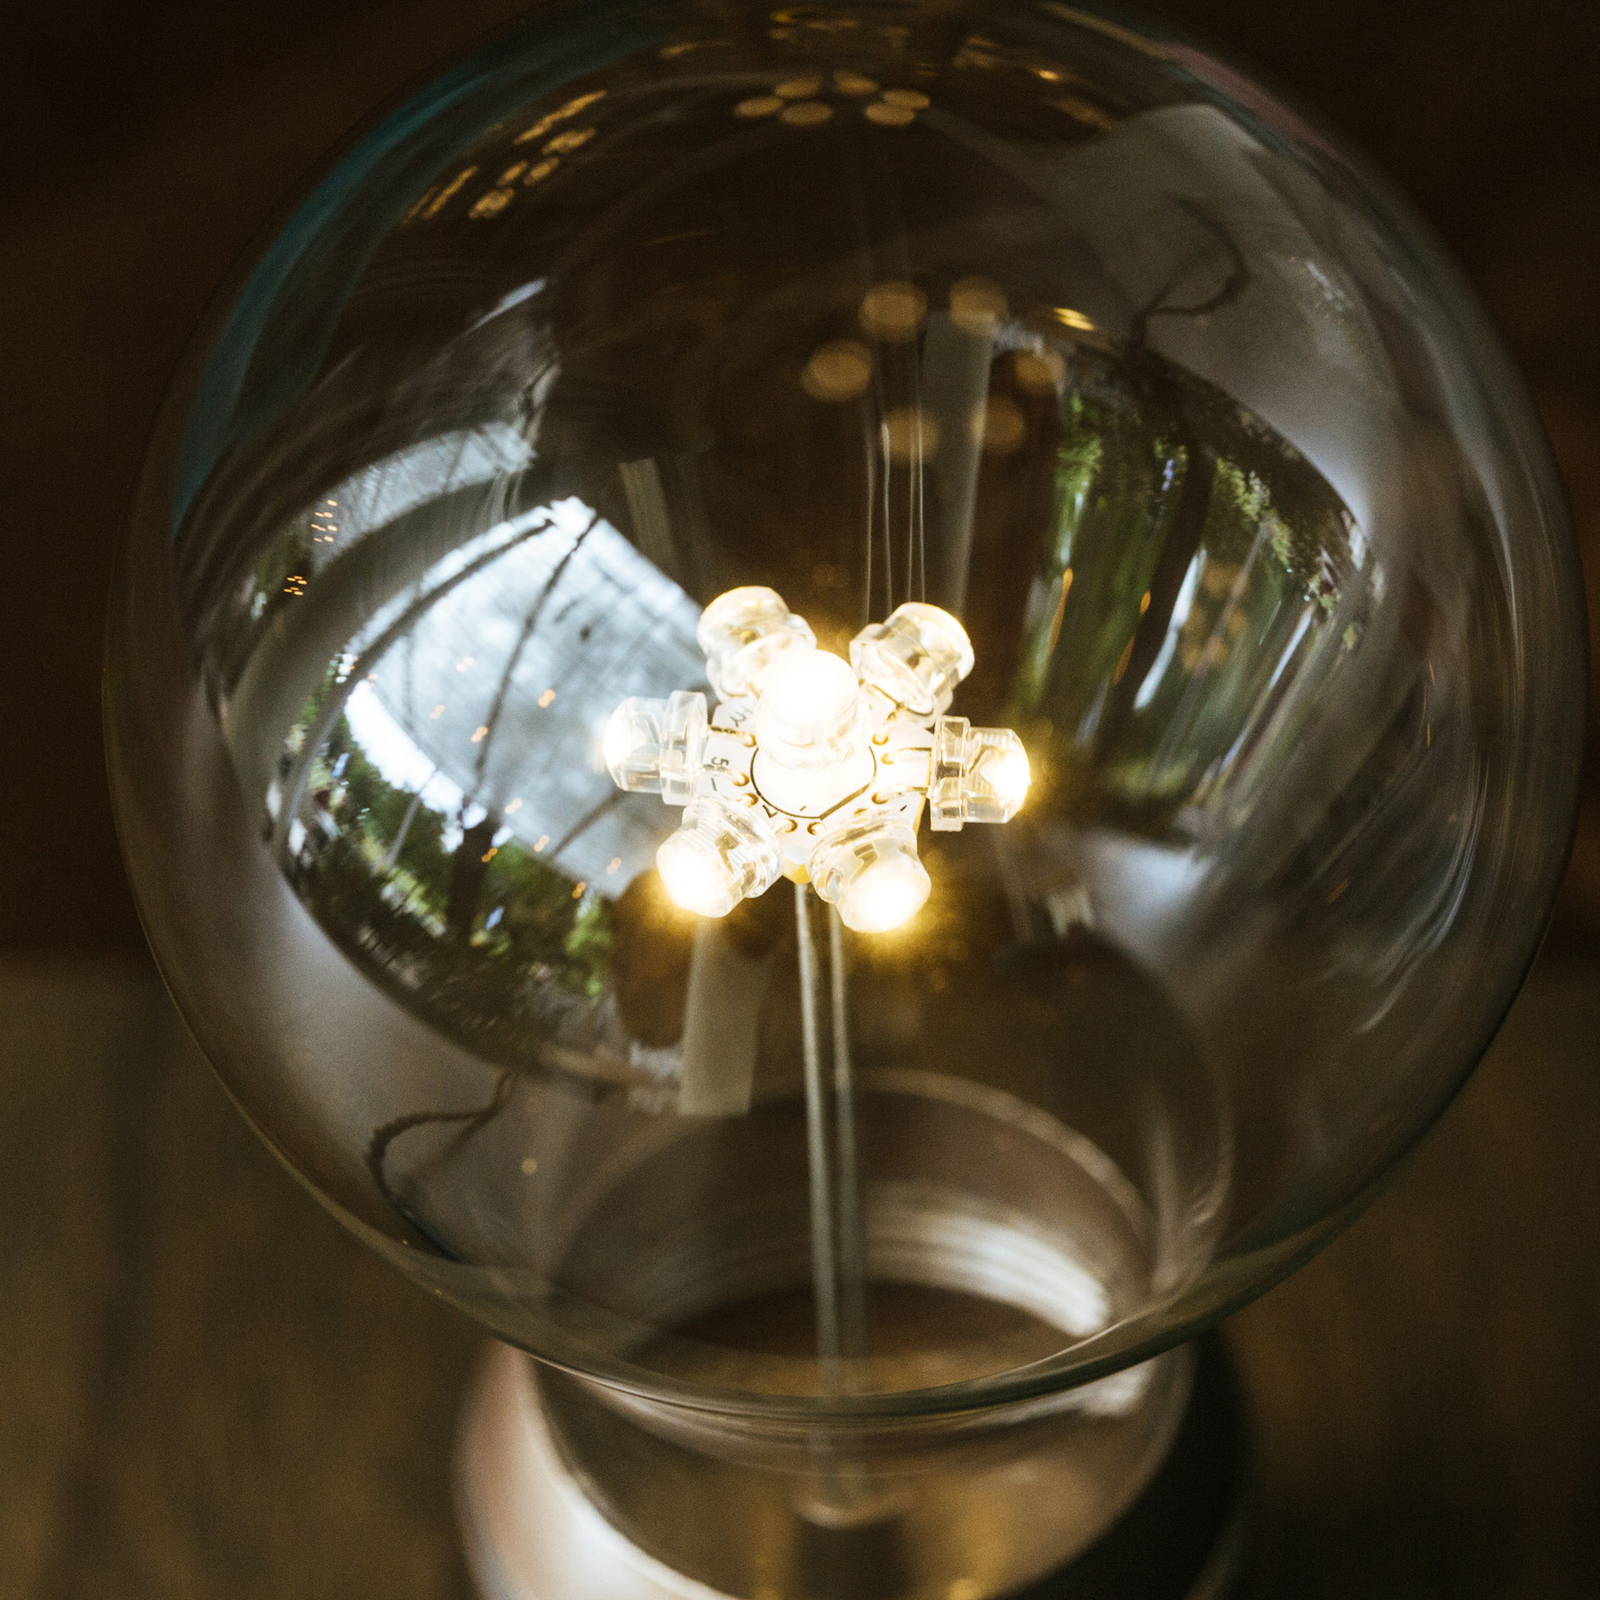 Namizna svetilka Flyte Buckminster LED